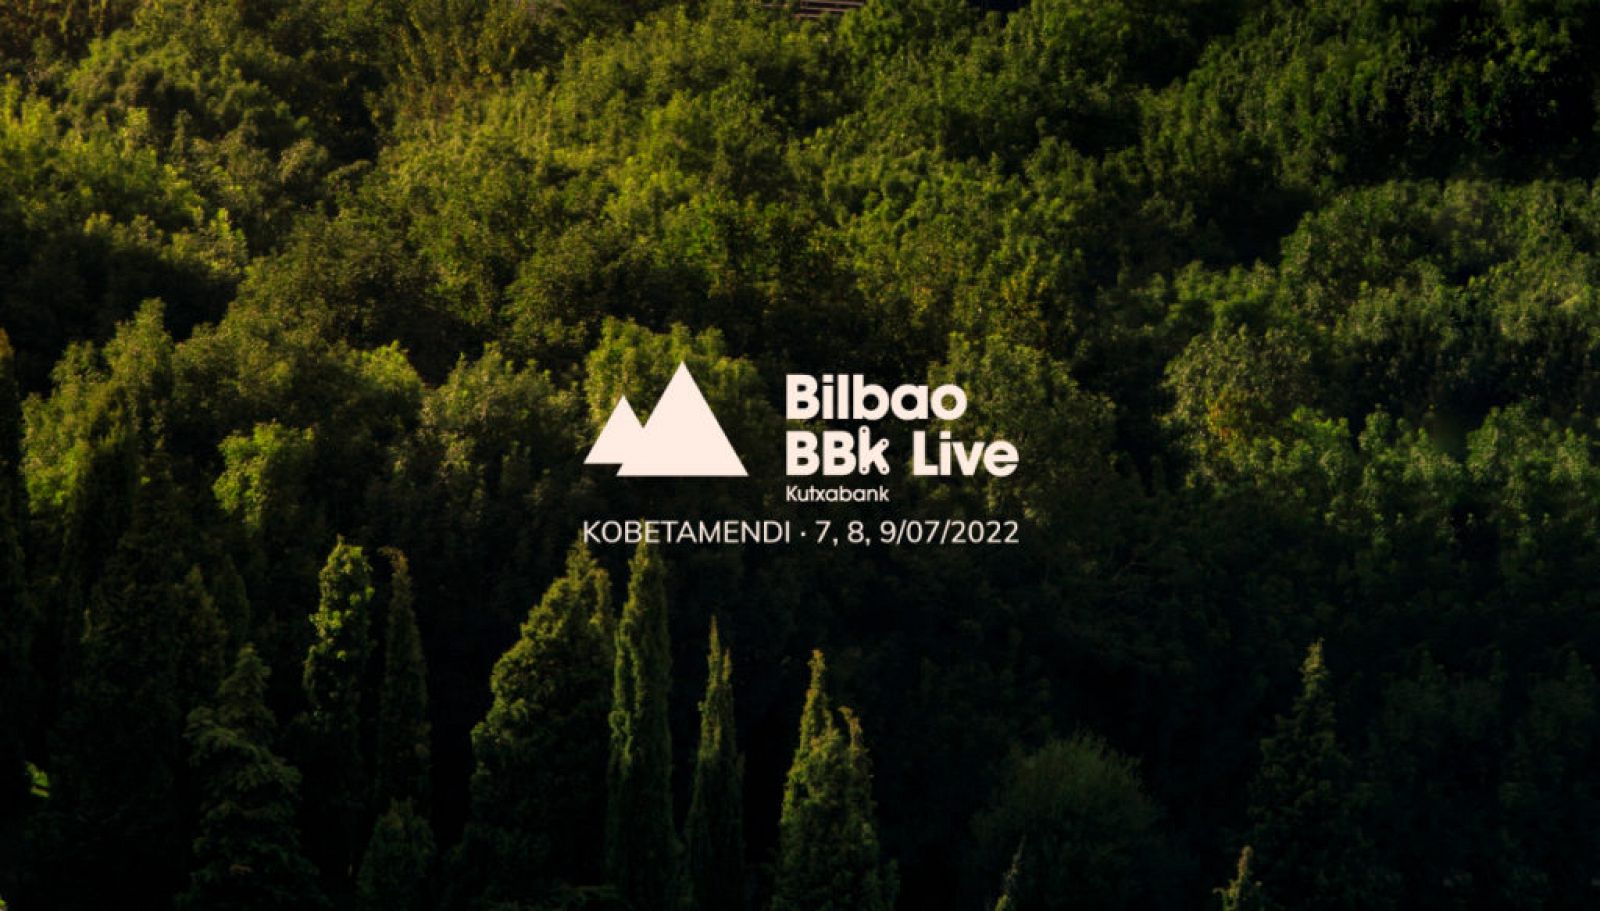 Bilbao BBK Live vuelve el 7, 8 y 9 de julio de 2022